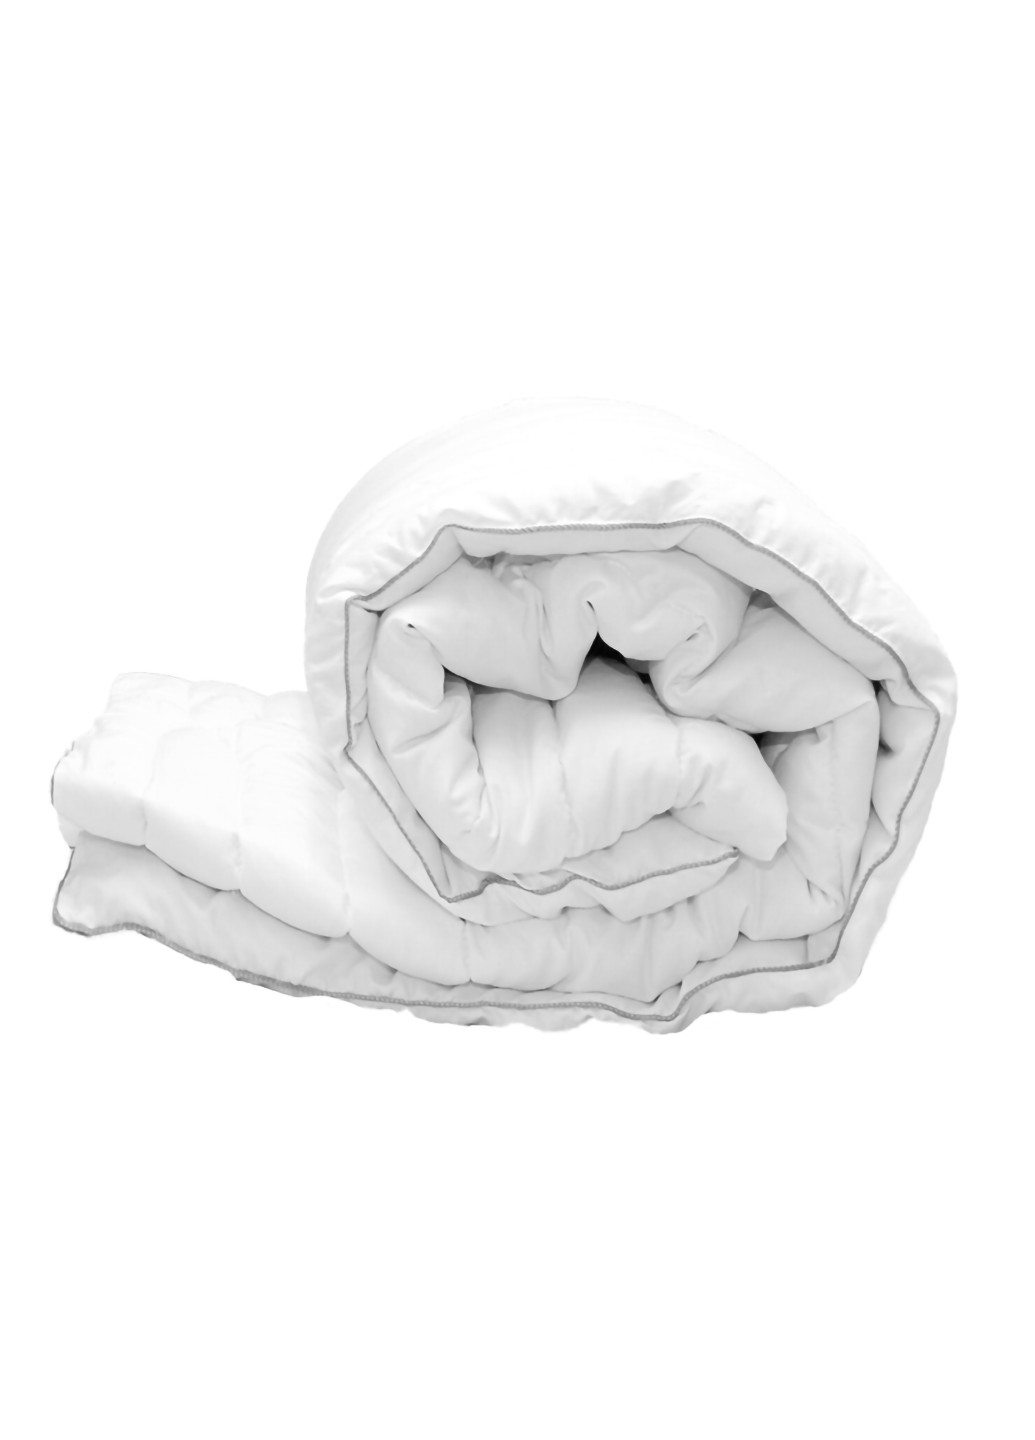 Комплект одеяло лебяжий пух "White" евро + 2 подушки 70х70 см Tag (254805525)